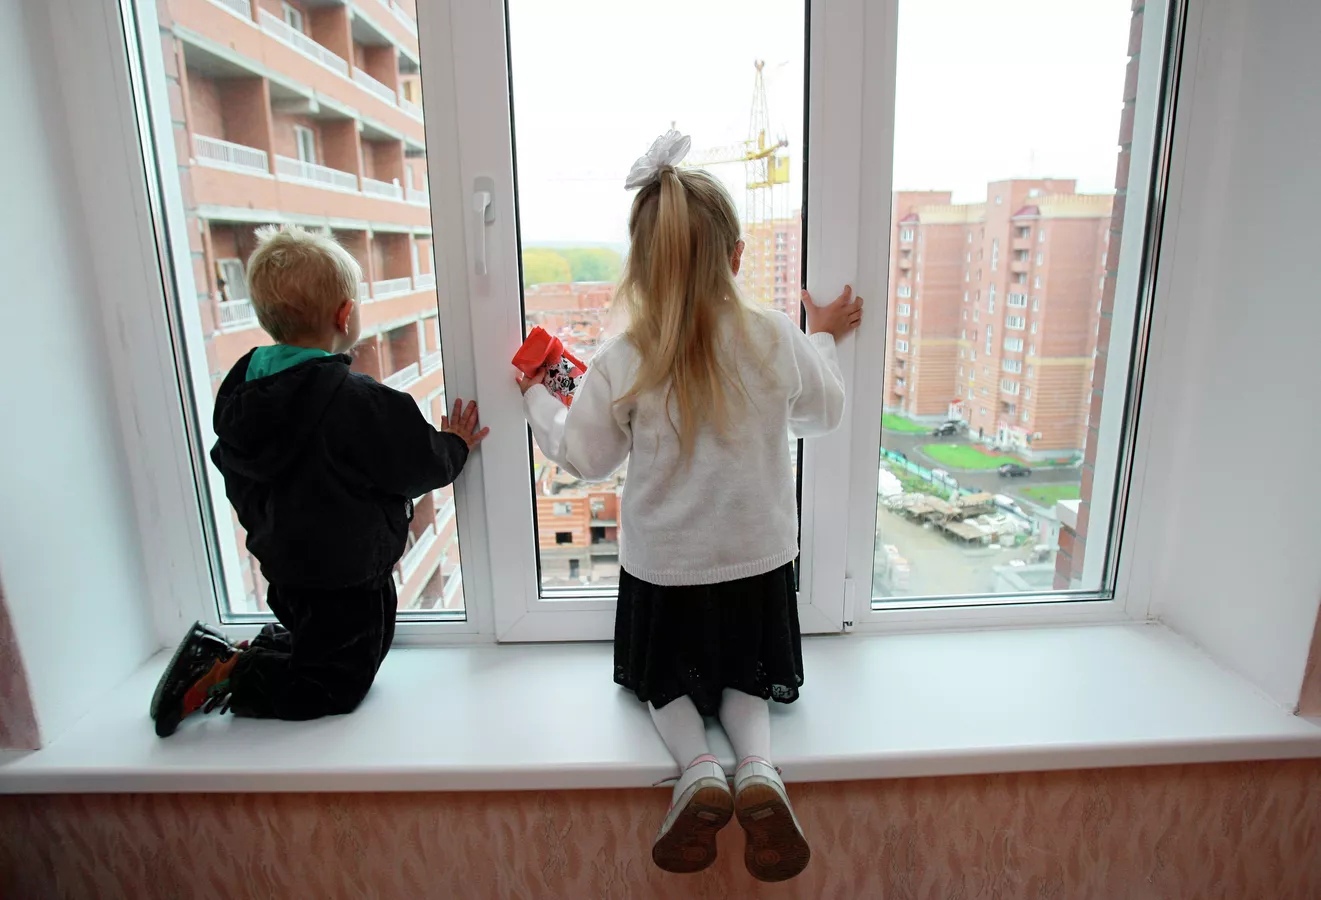 Минск перевыполнил план по обеспечению жильем многодетных семей